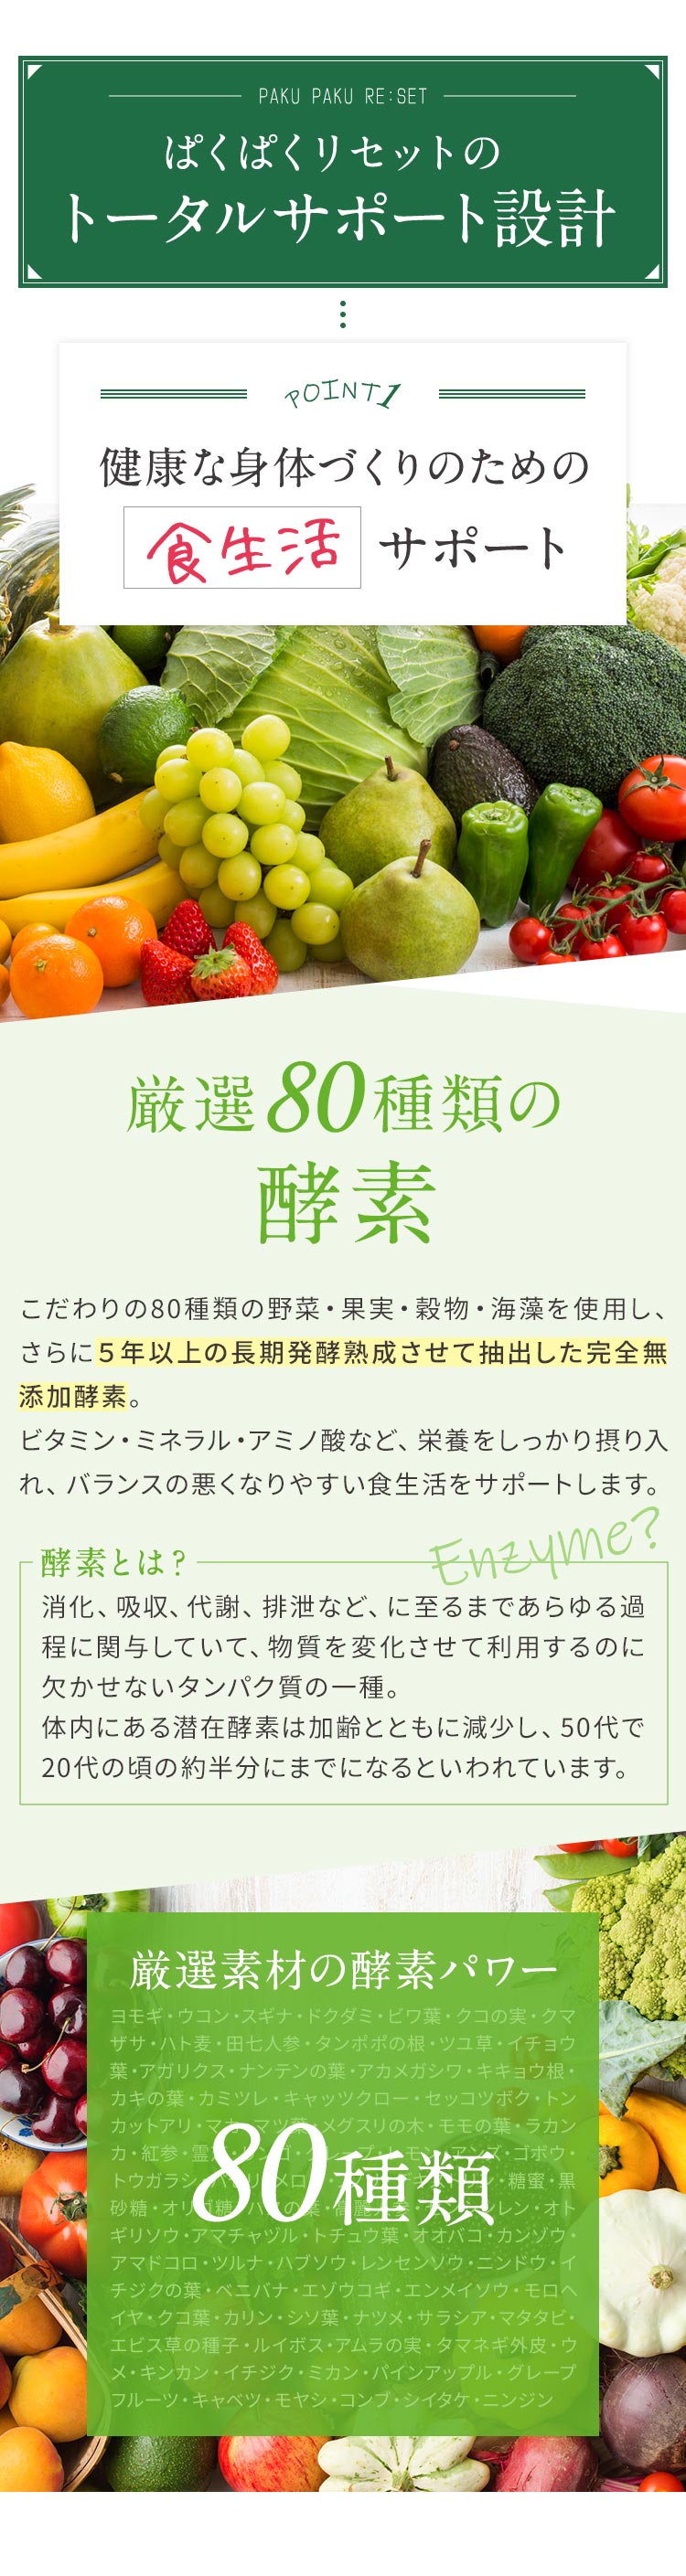 ぱくぱくリセットの トータルサポート設計 POINT1:健康な身体づくりのための食生活サポート